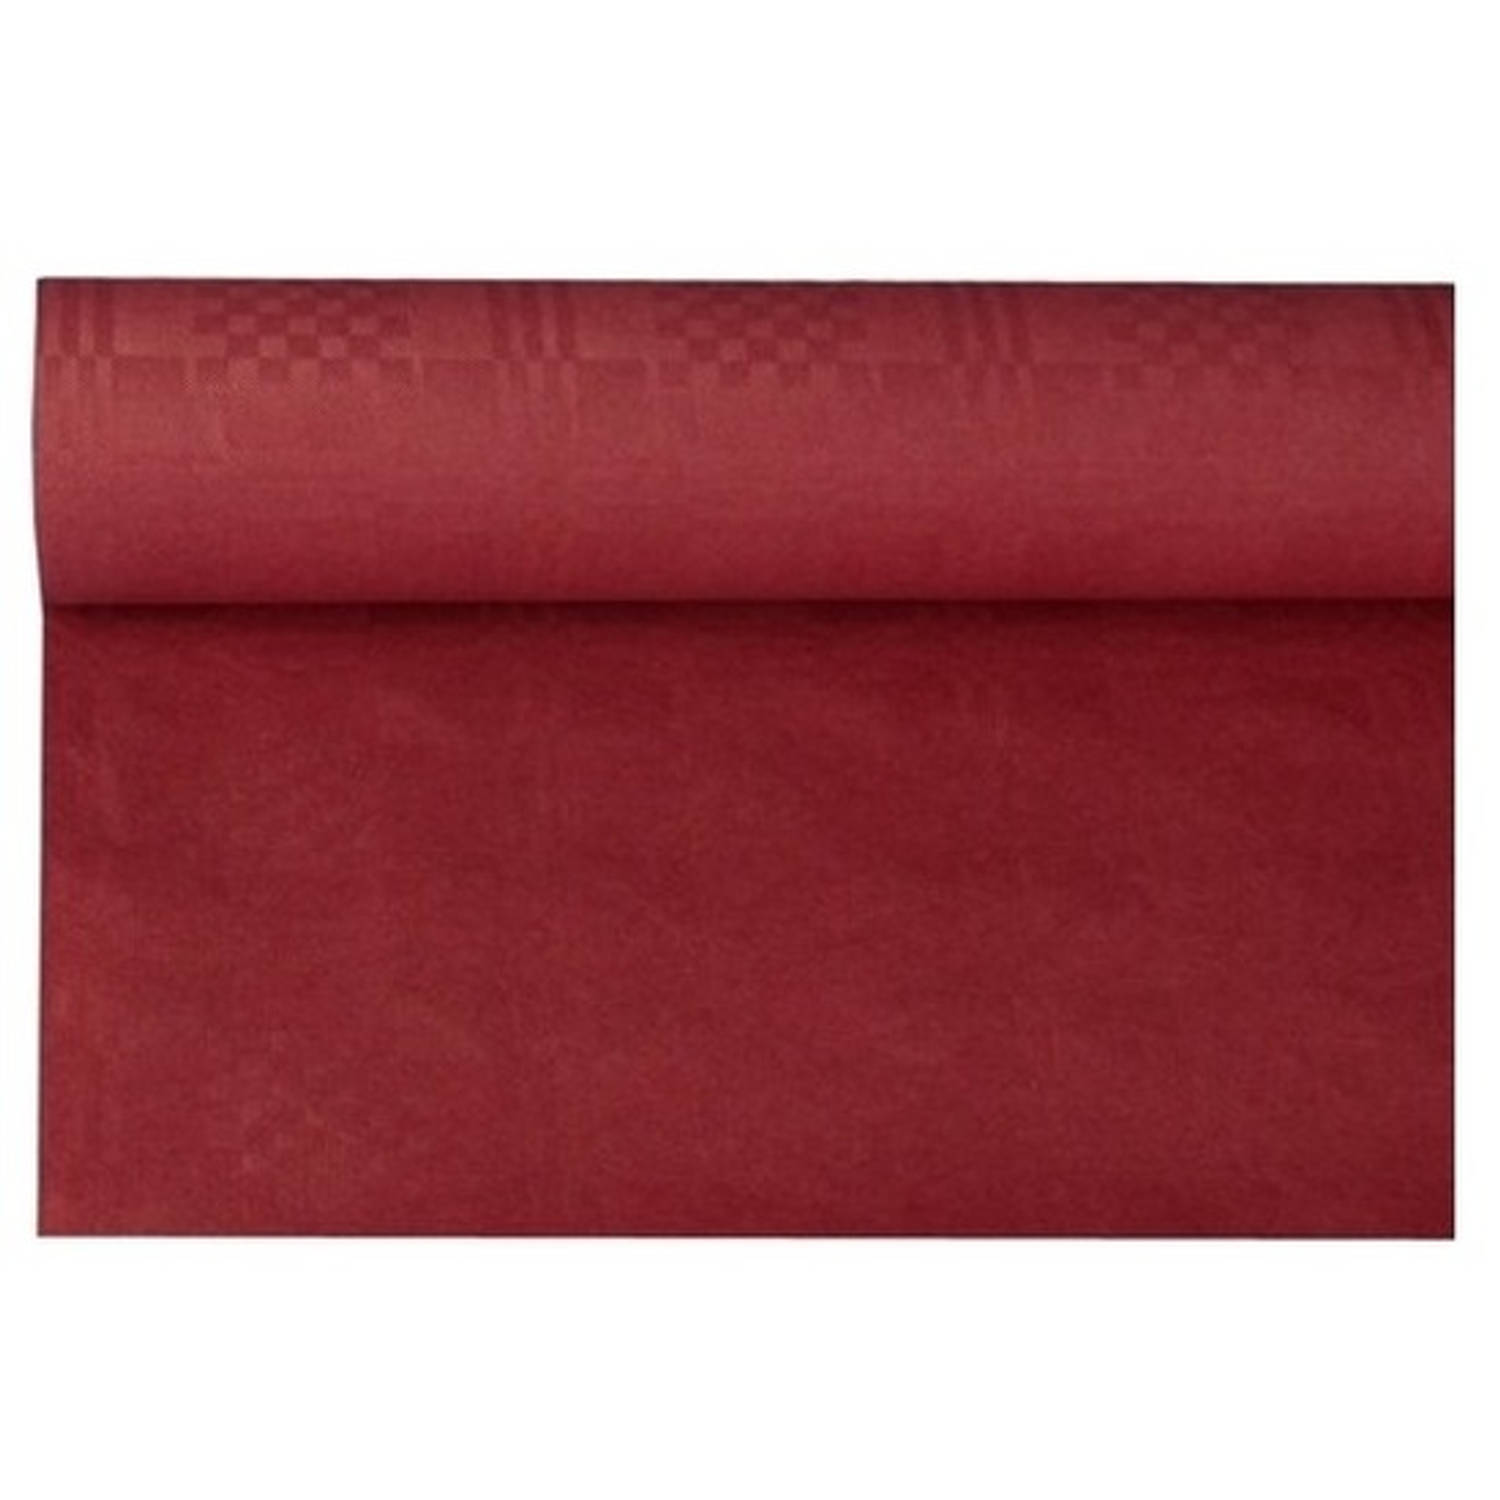 Haza Original Bordeaux Papieren Tafellaken/tafelkleed 800 X 118 Cm Op Rol - Bordeaux Rode Thema Tafeldecoratie Versieringen - Rood